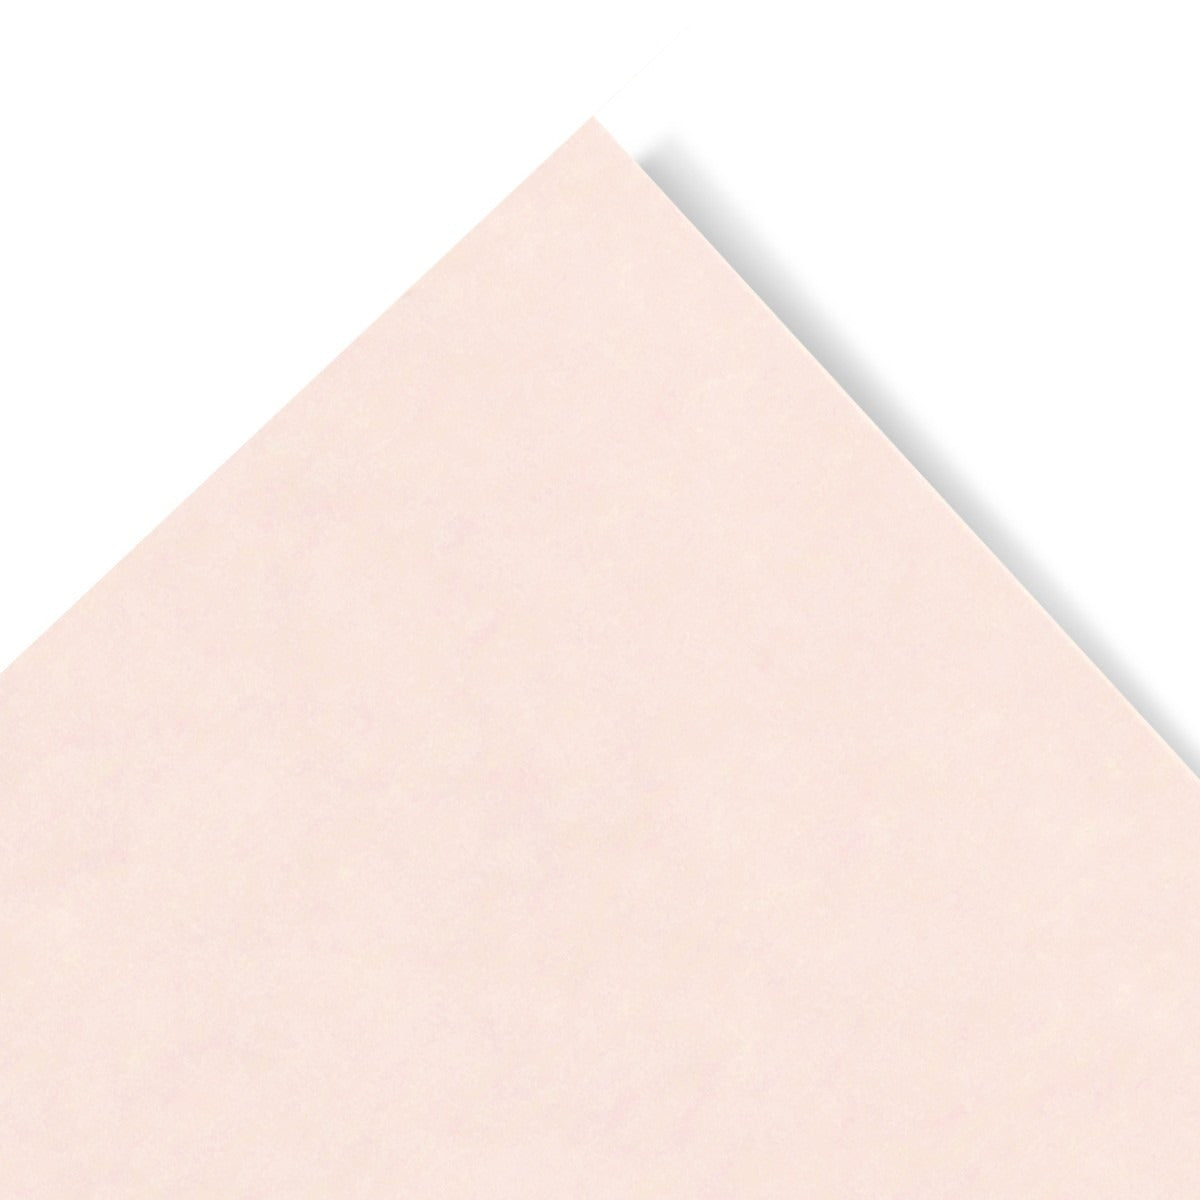 Parchment Paper Pink